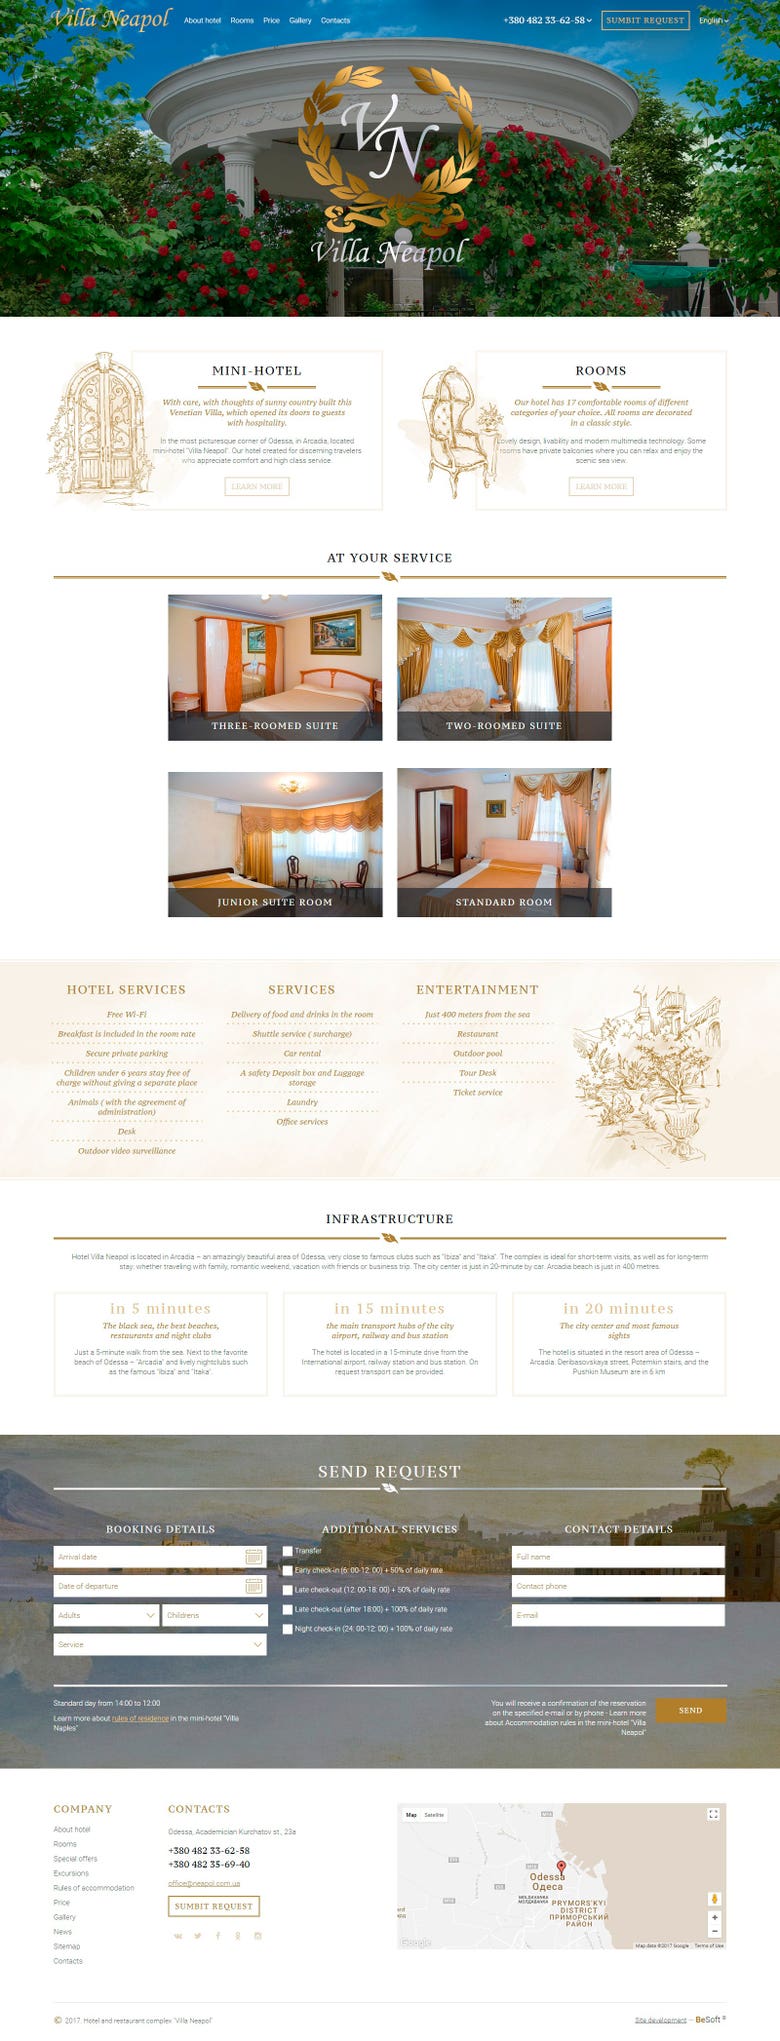 Website for hotel "VILLA NEAPOL" http://neapol.com.ua/en/